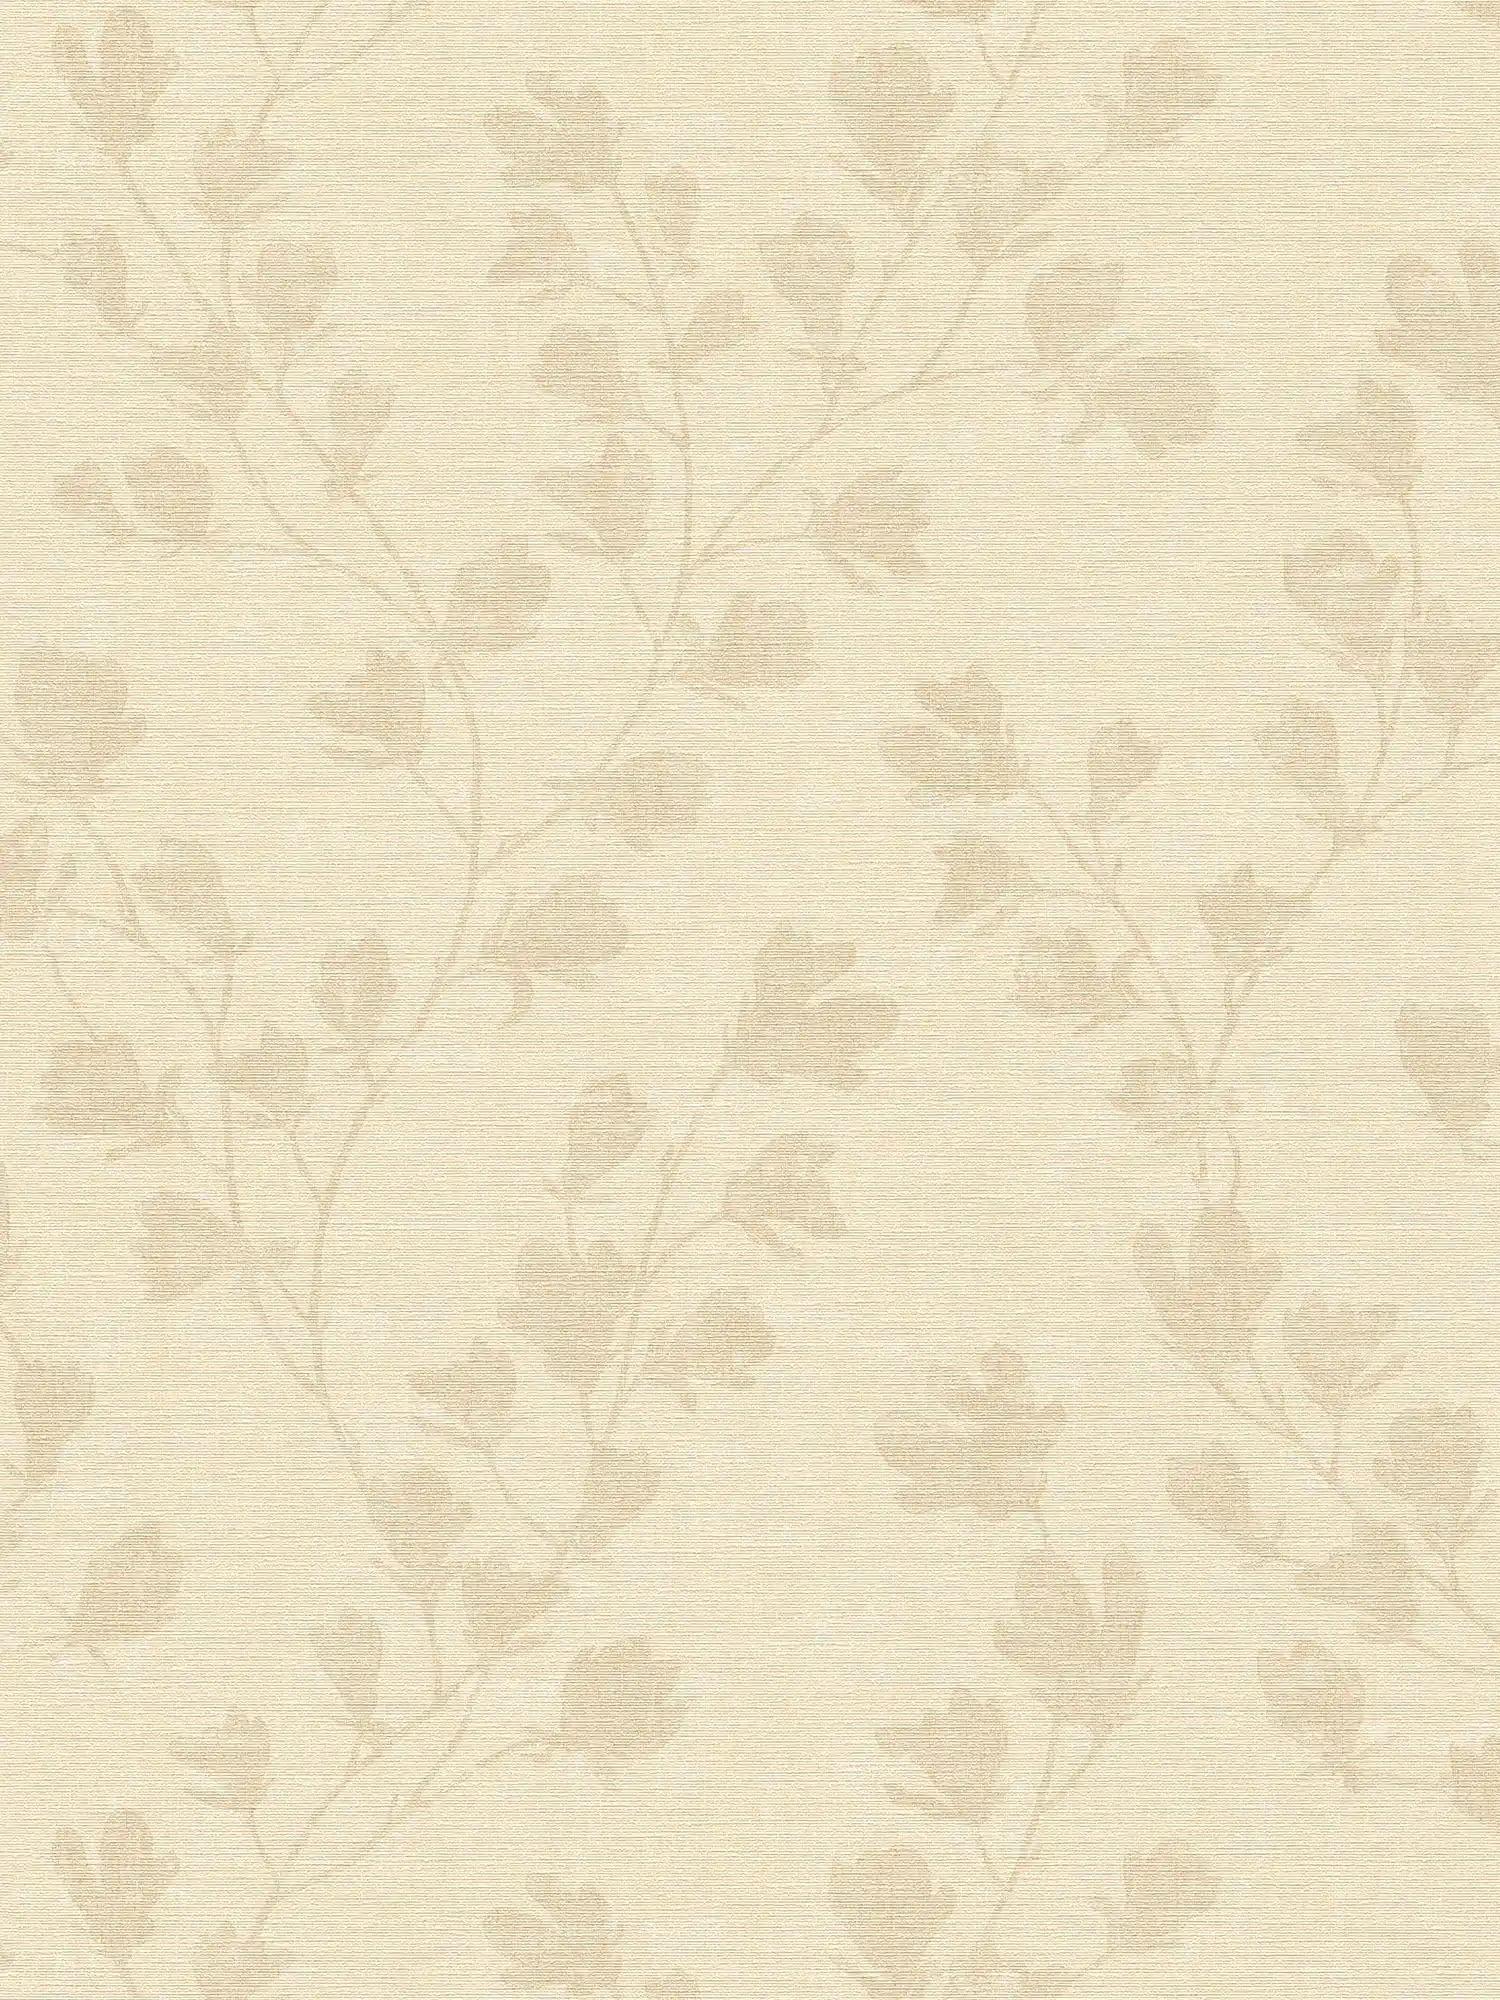 Patroonbehang met bladeren in landelijke stijl - crème, beige
